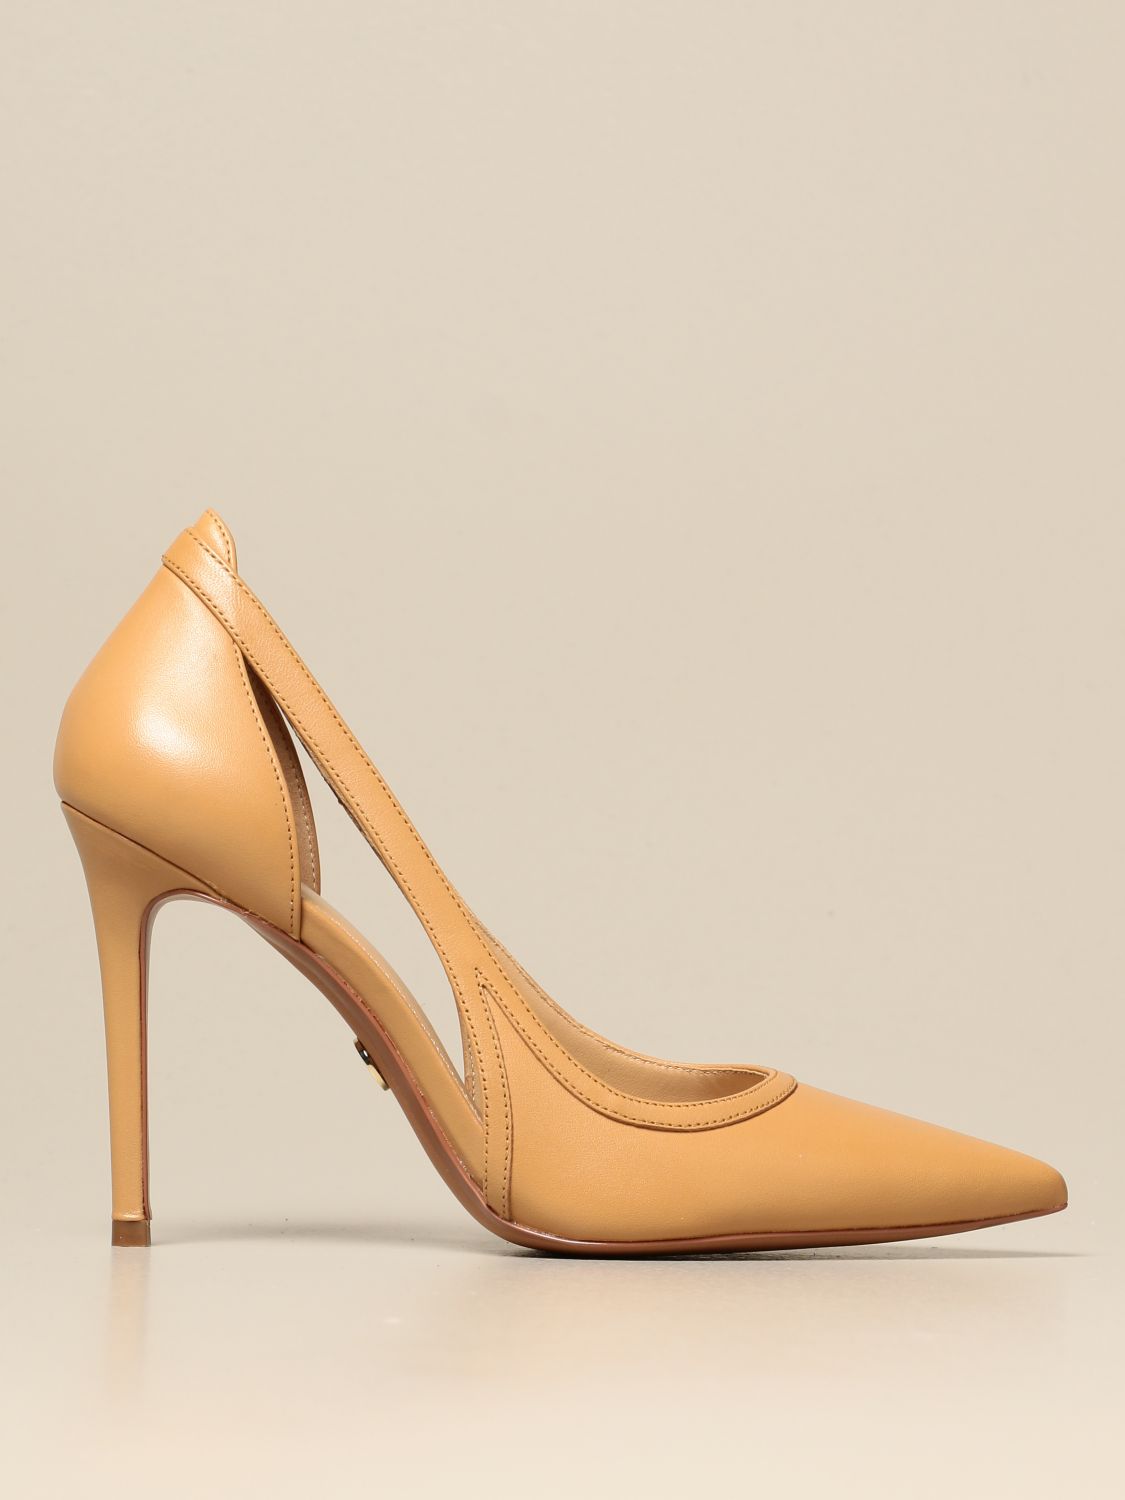 michael kors women's high heel shoes